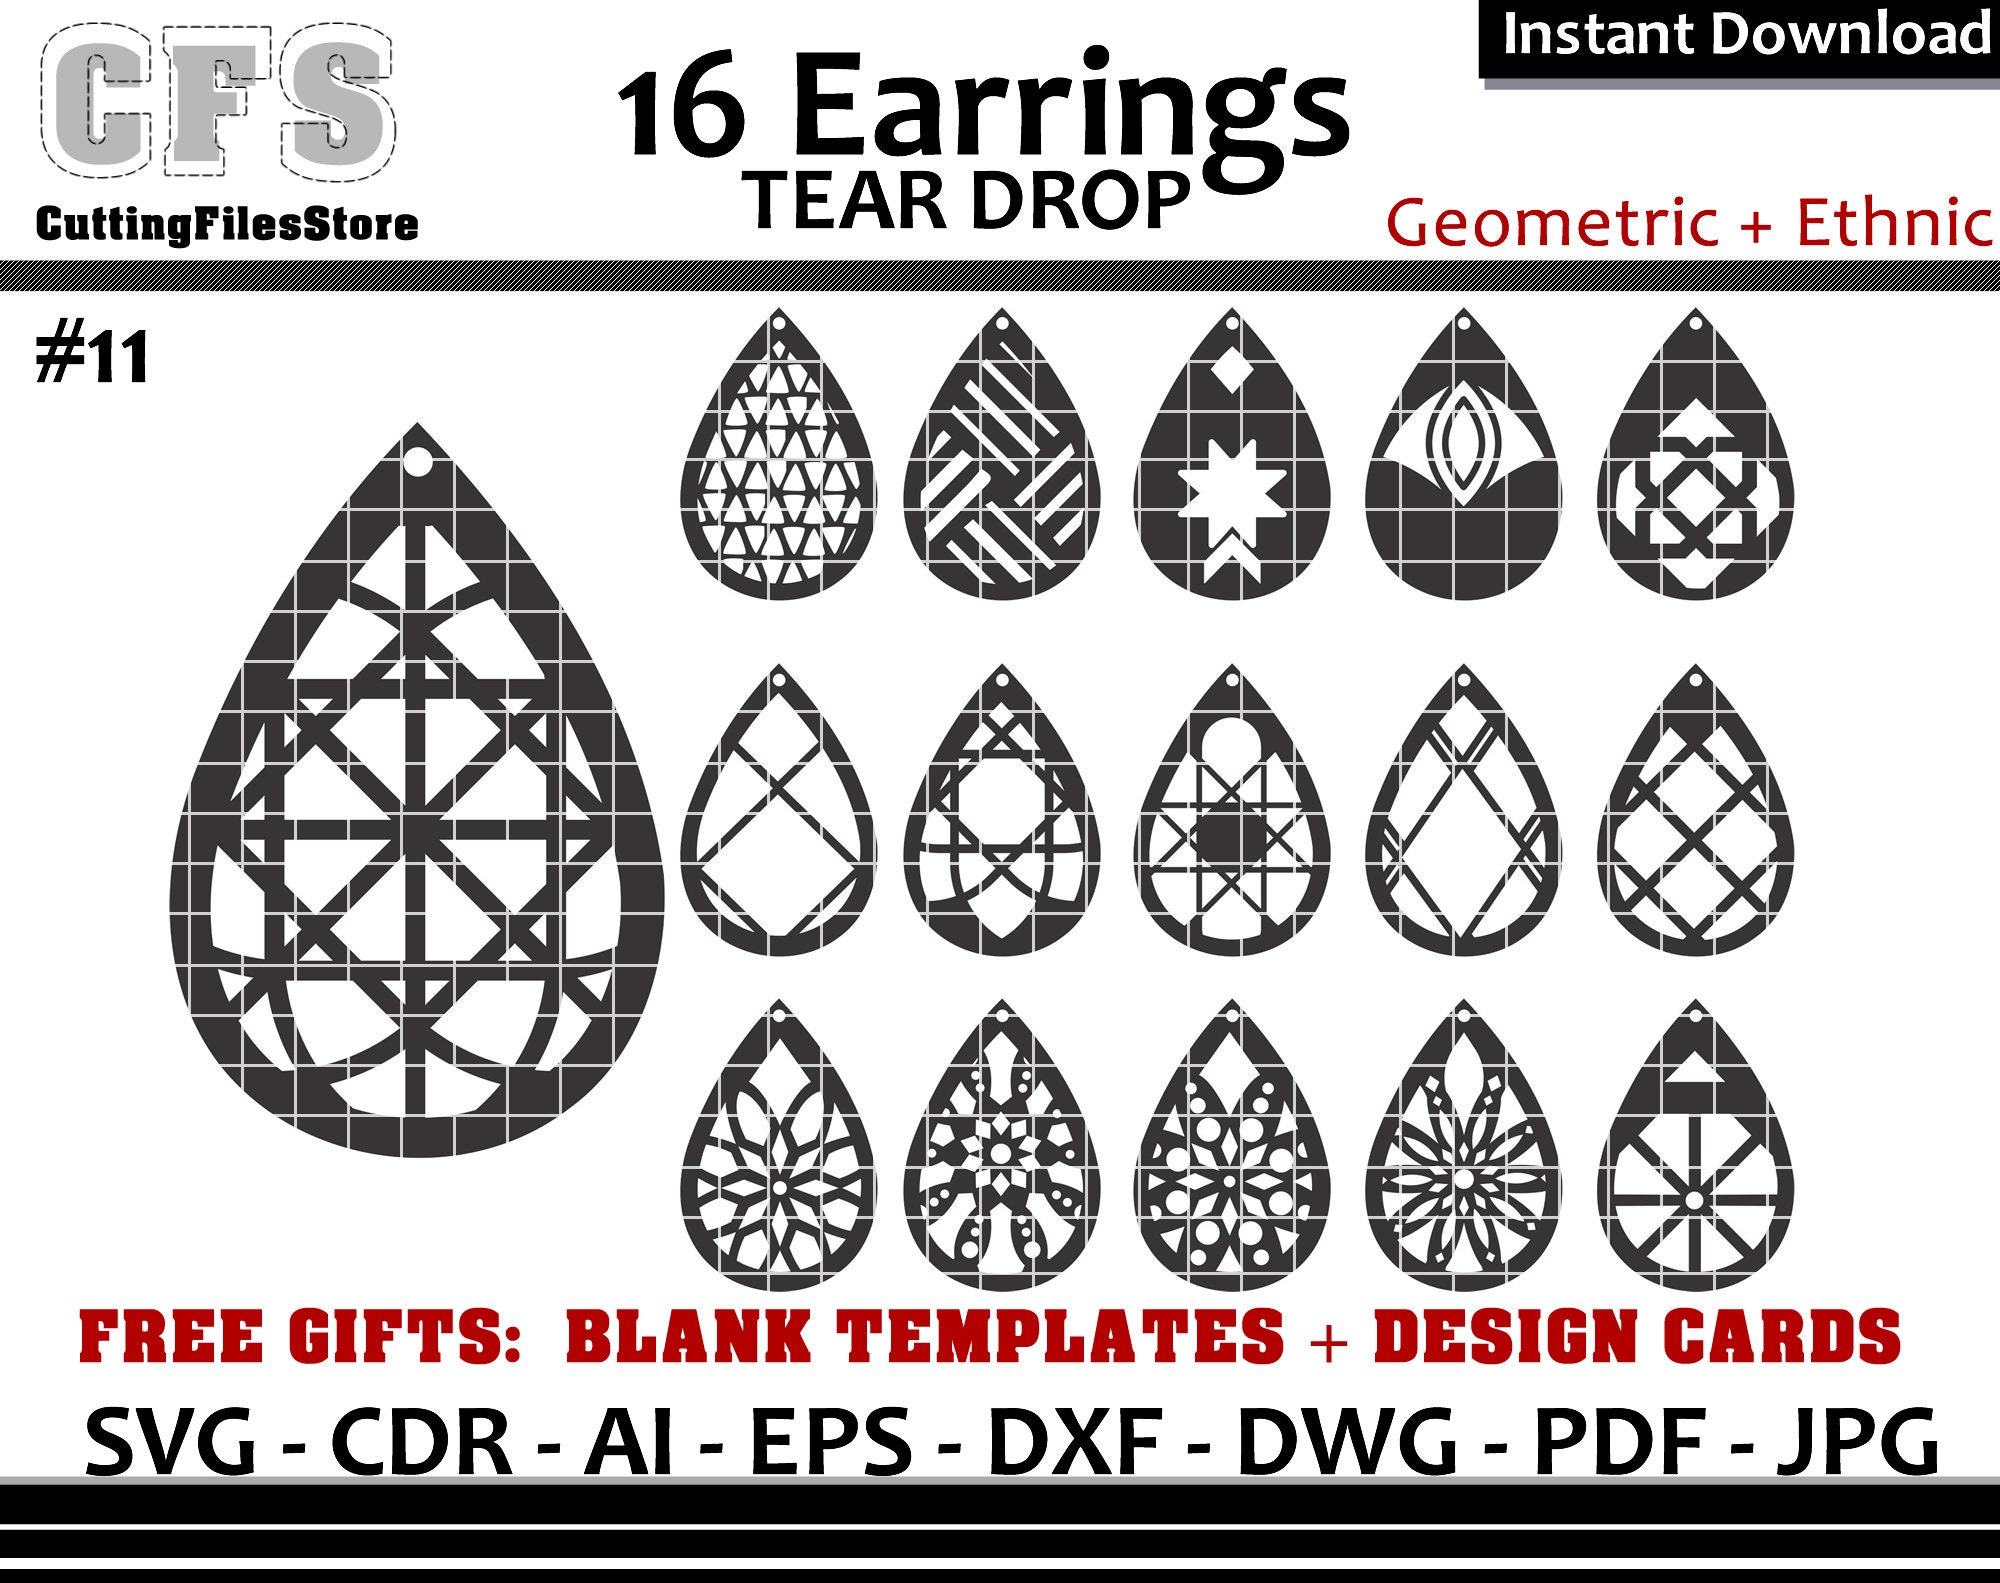 Earrings SVG Tear Drop Geometric Cut Files Gifts - Etsy